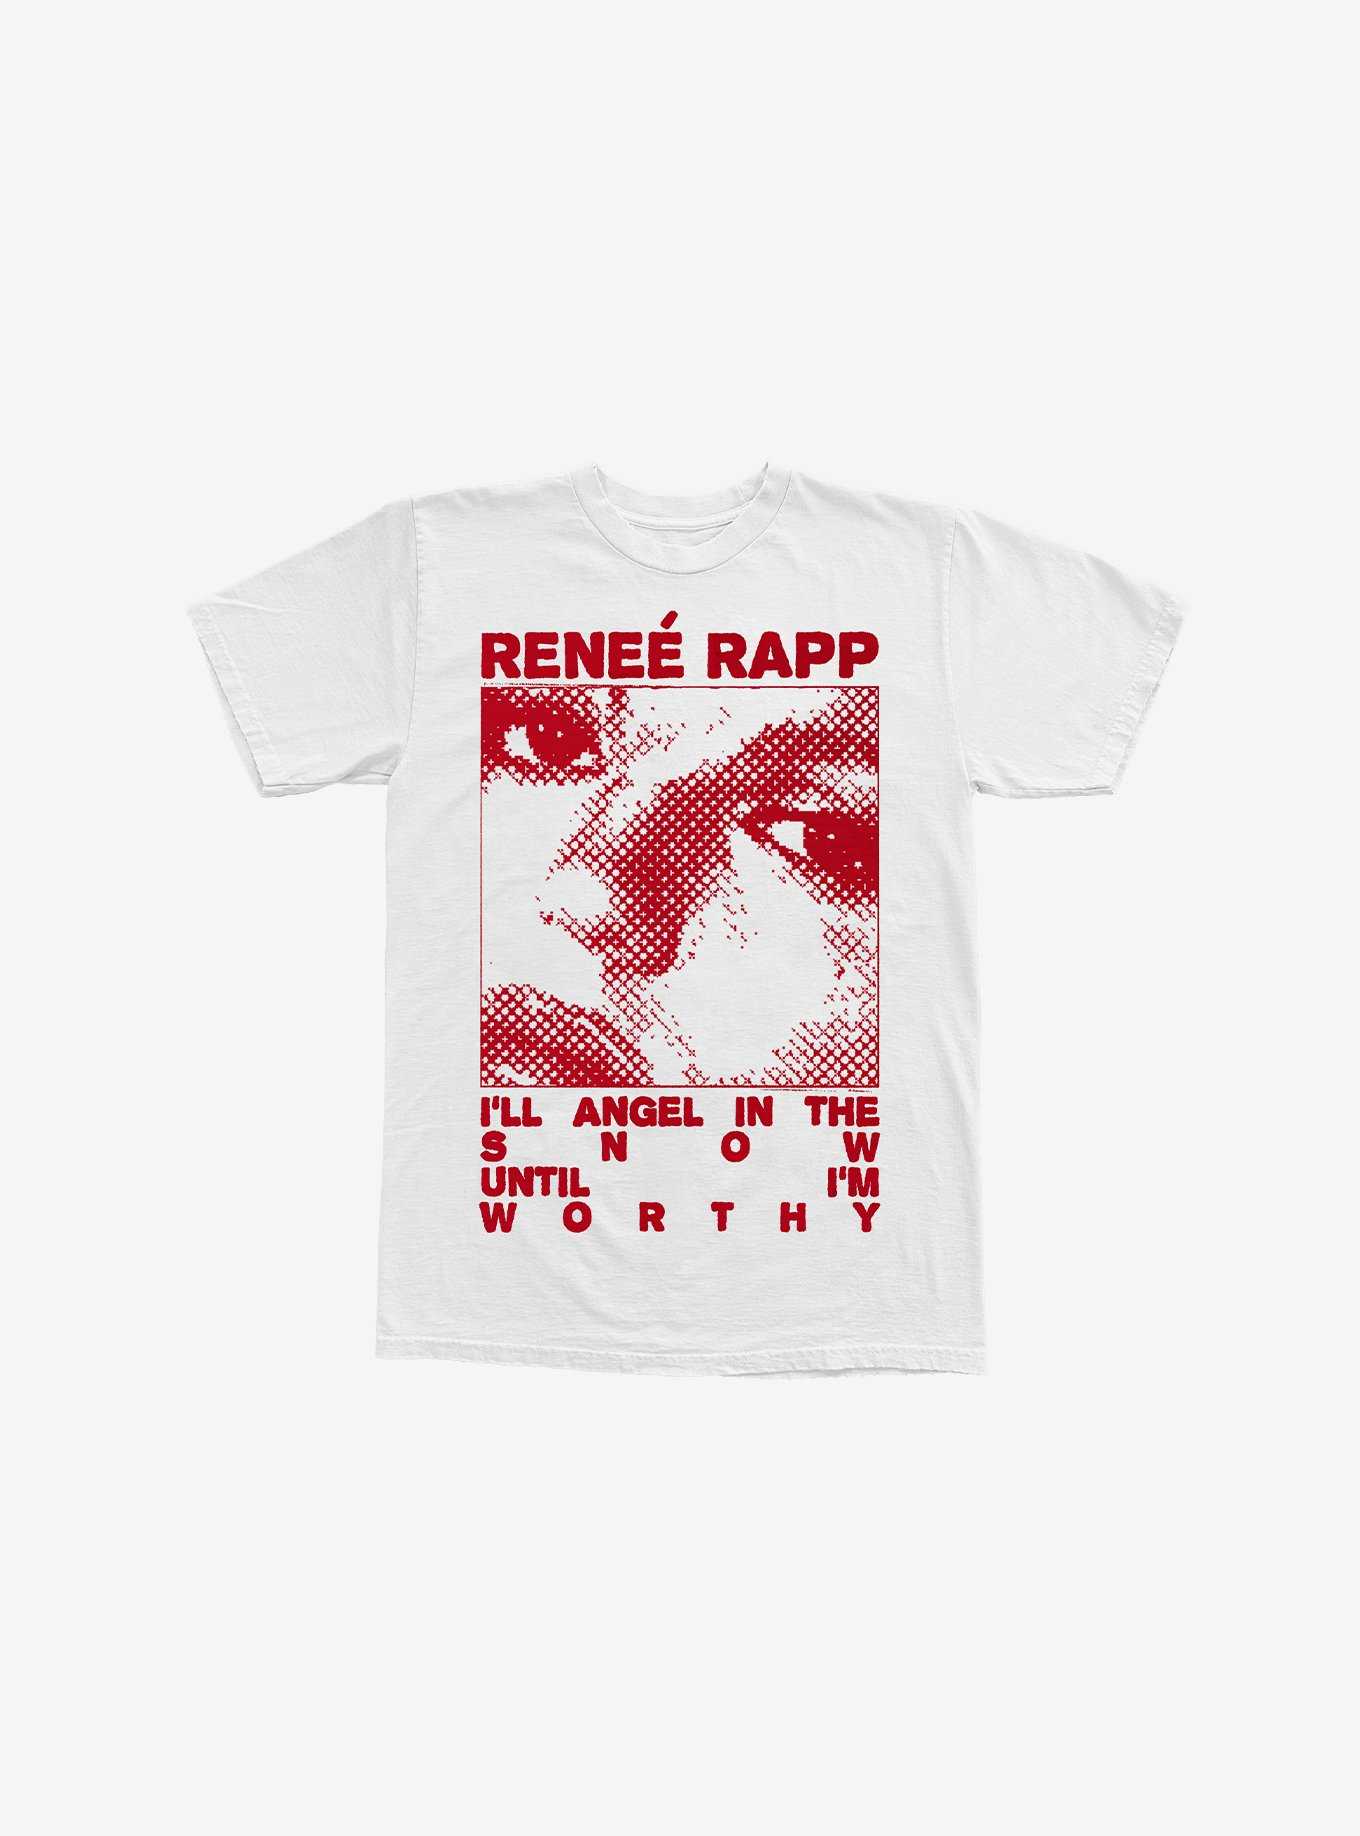 Renee Rapp Close-Up Portrait Boyfriend Fit Girls T-Shirt, , hi-res